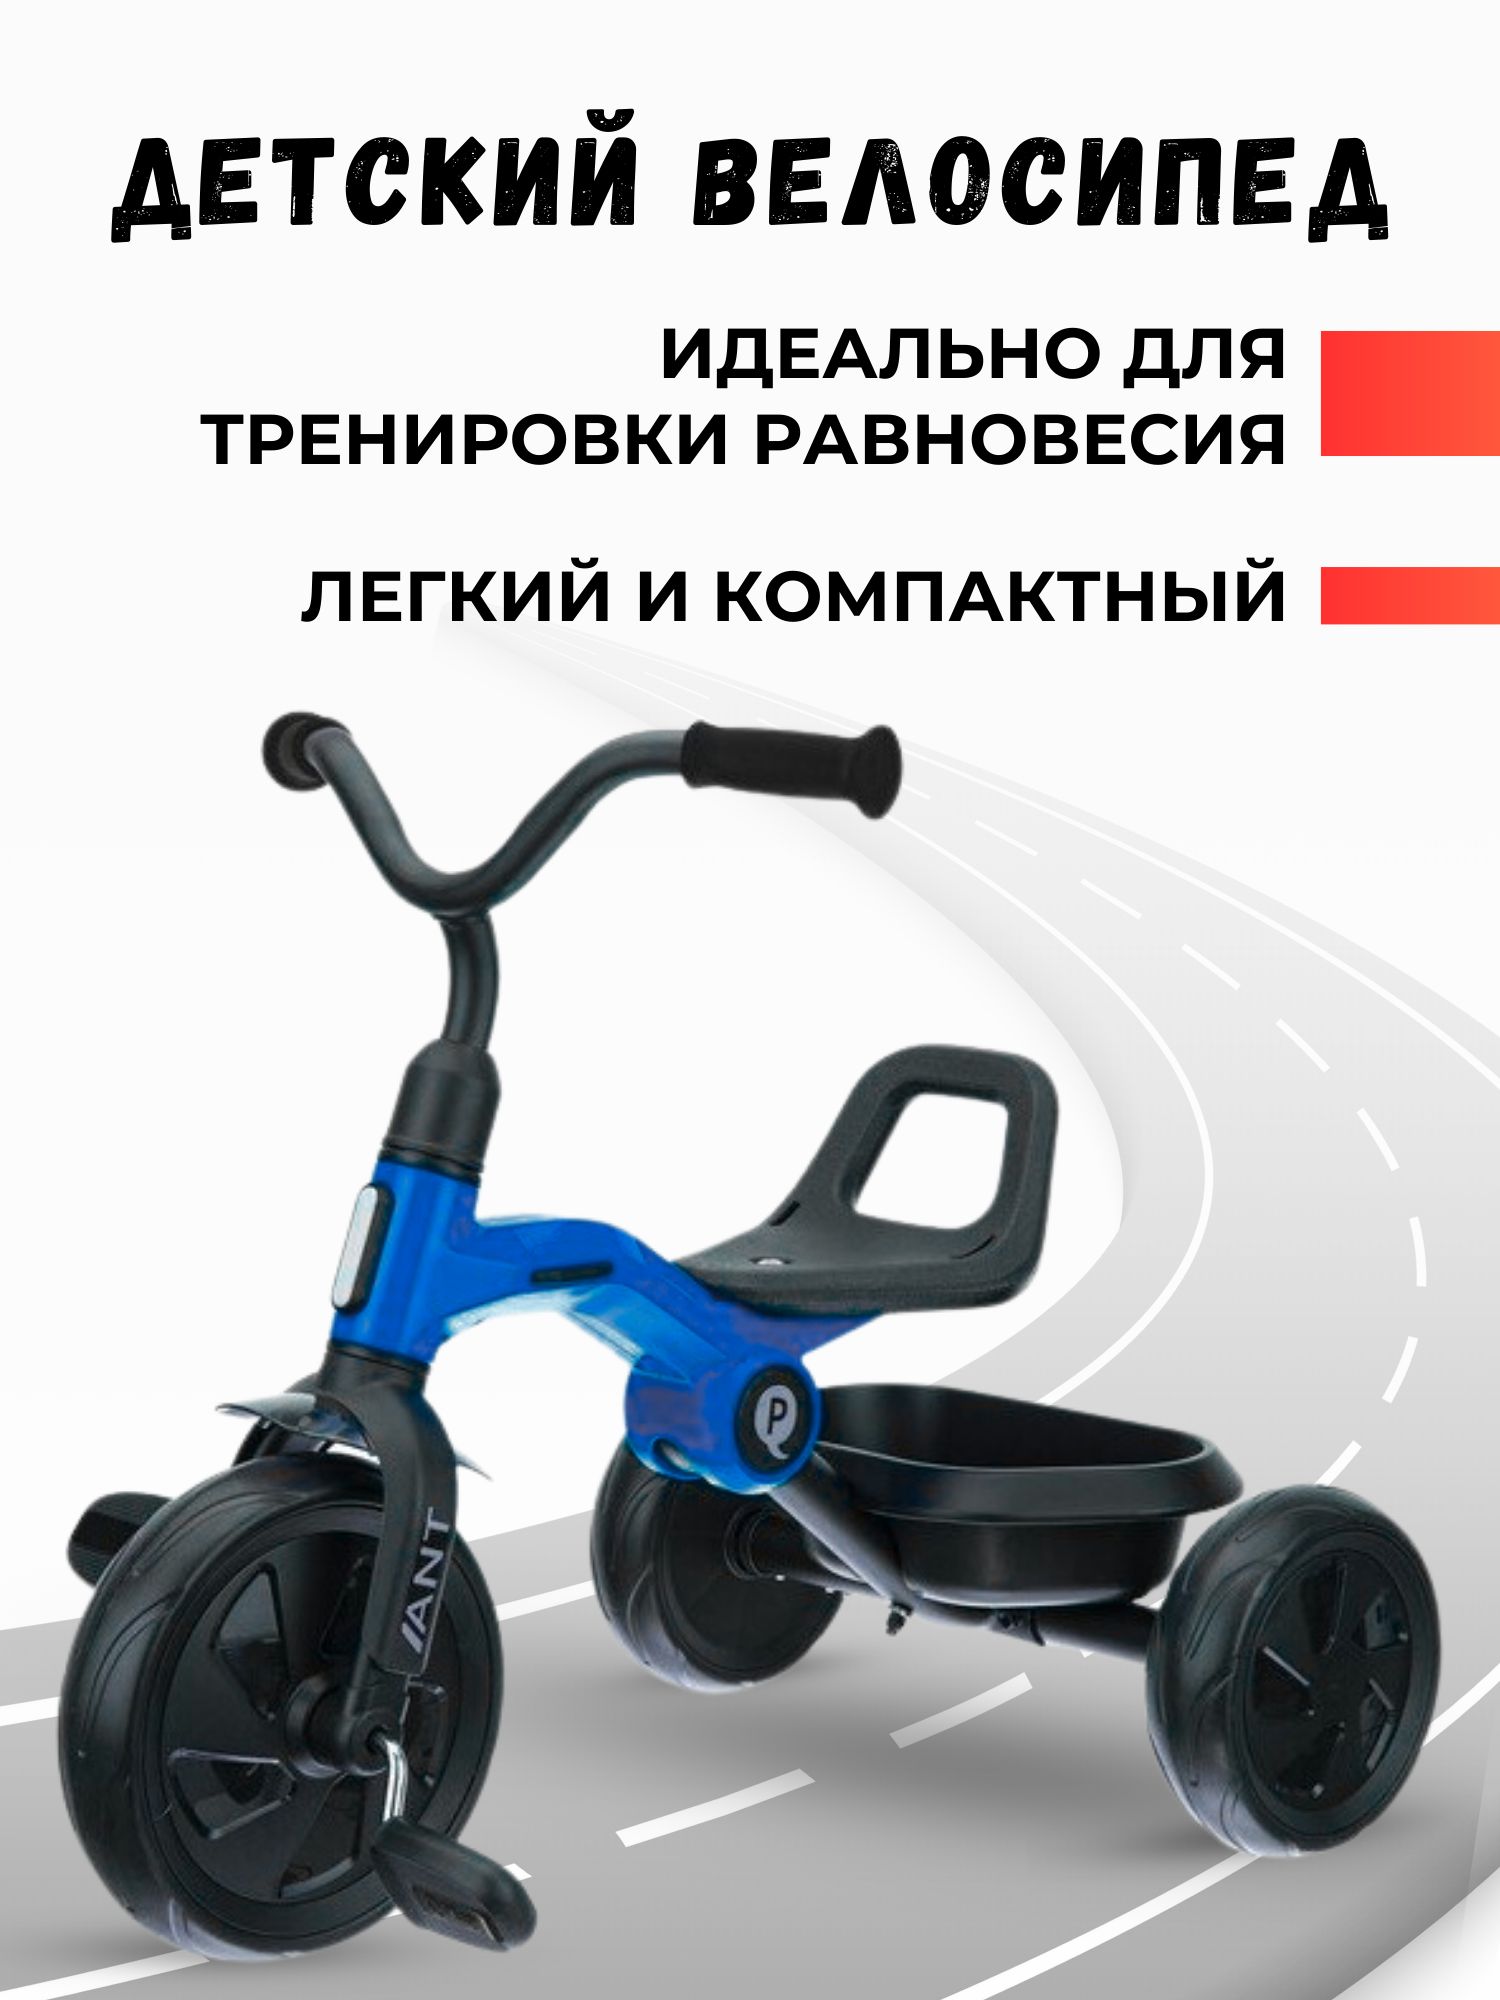 Велосипед детский трехколесный QPlay ANT цвет синий